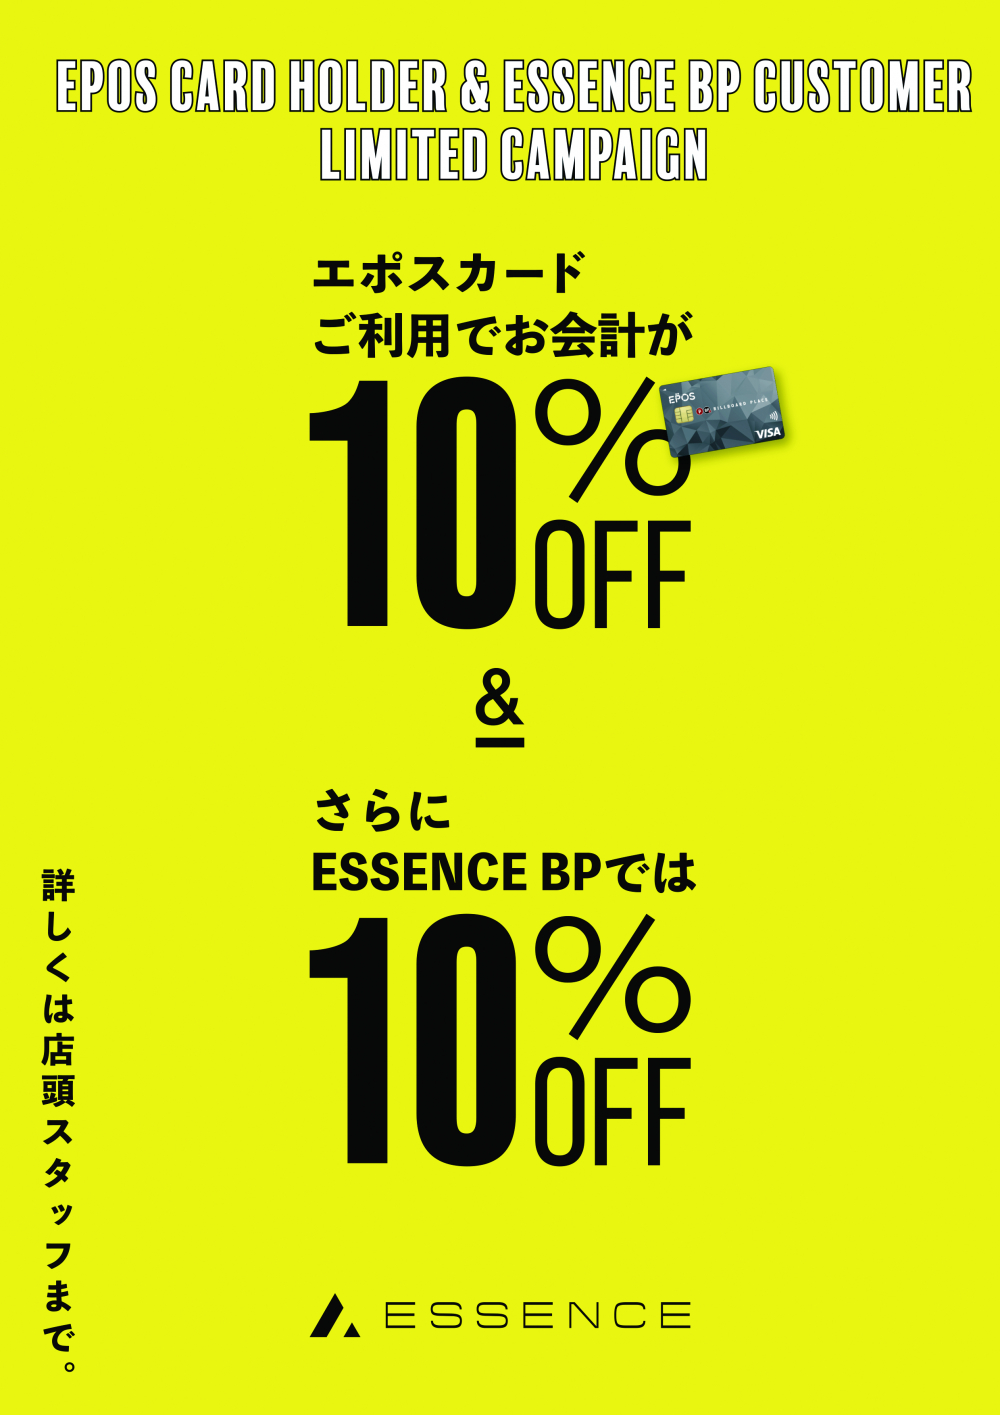 【ESSENCE BP】EPOSカード利用で、10%OFF+10%OFFのイベント開催します!